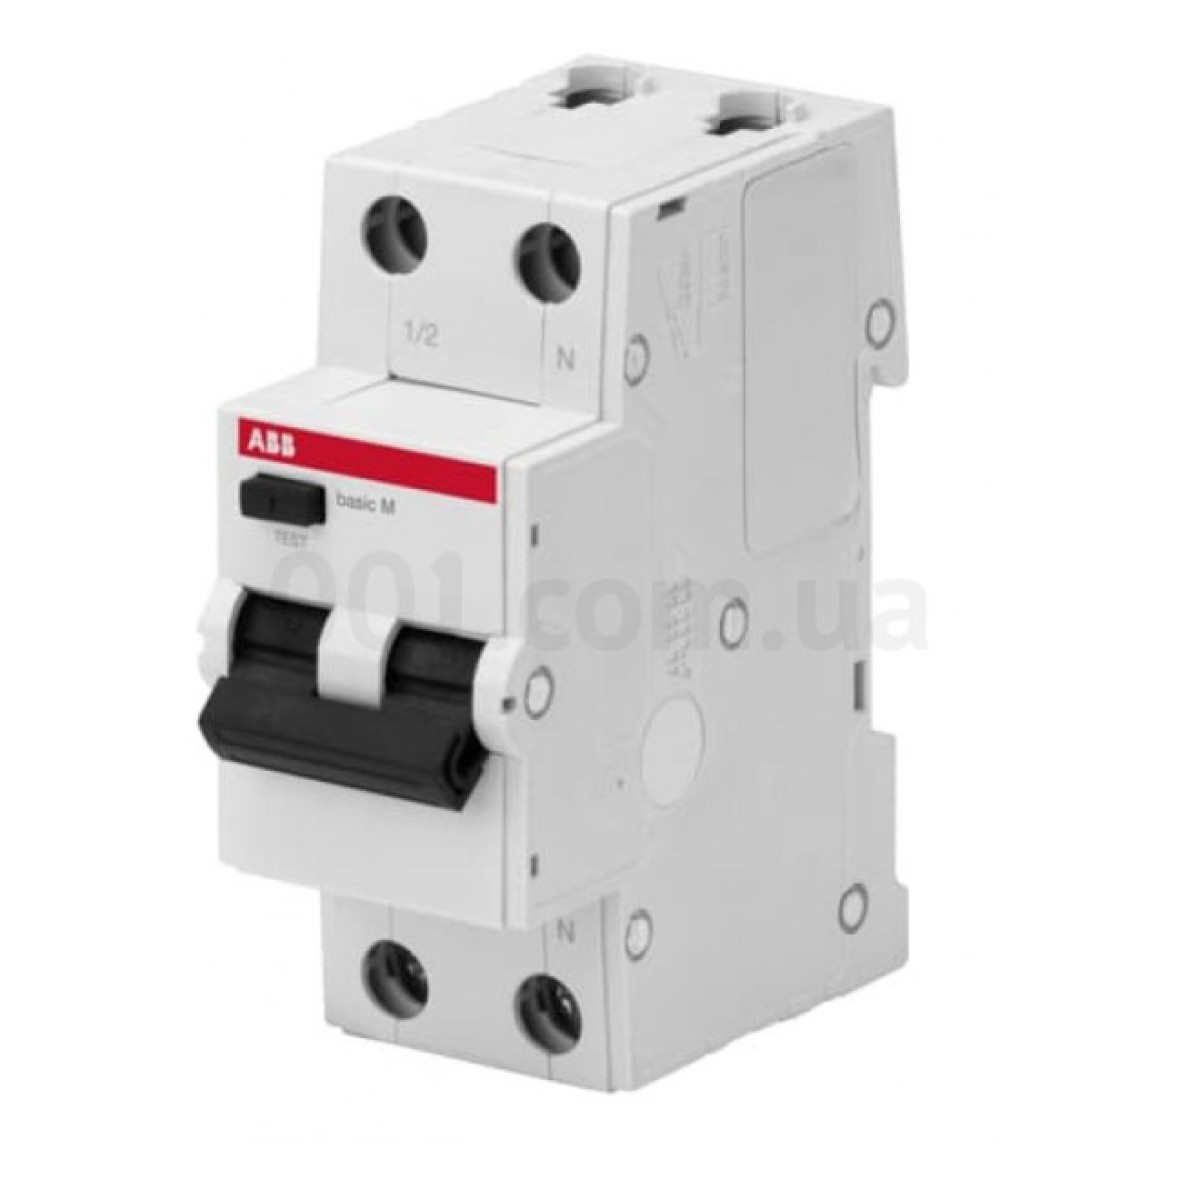 Автоматичний вимикач диференційного струму BMR415C25 1P+N/25А/30мА тип AC BASIC M, ABB 98_98.jpg - фото 1